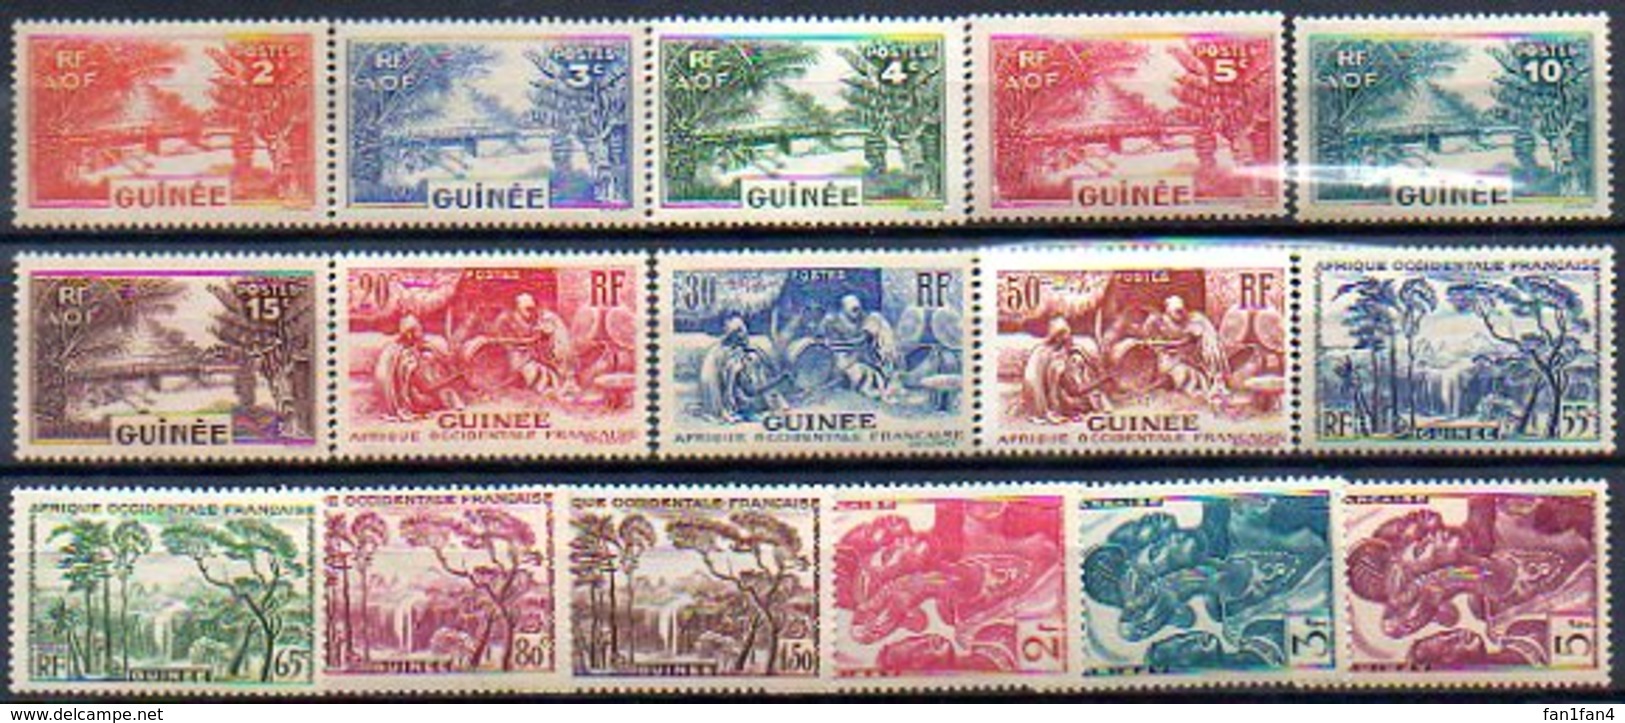 Colonies Françaises Et Protectorats (GUINEE) - 1938 - N° 125 à 144 - (Lot De 16 Valeurs Différentes) - Neufs